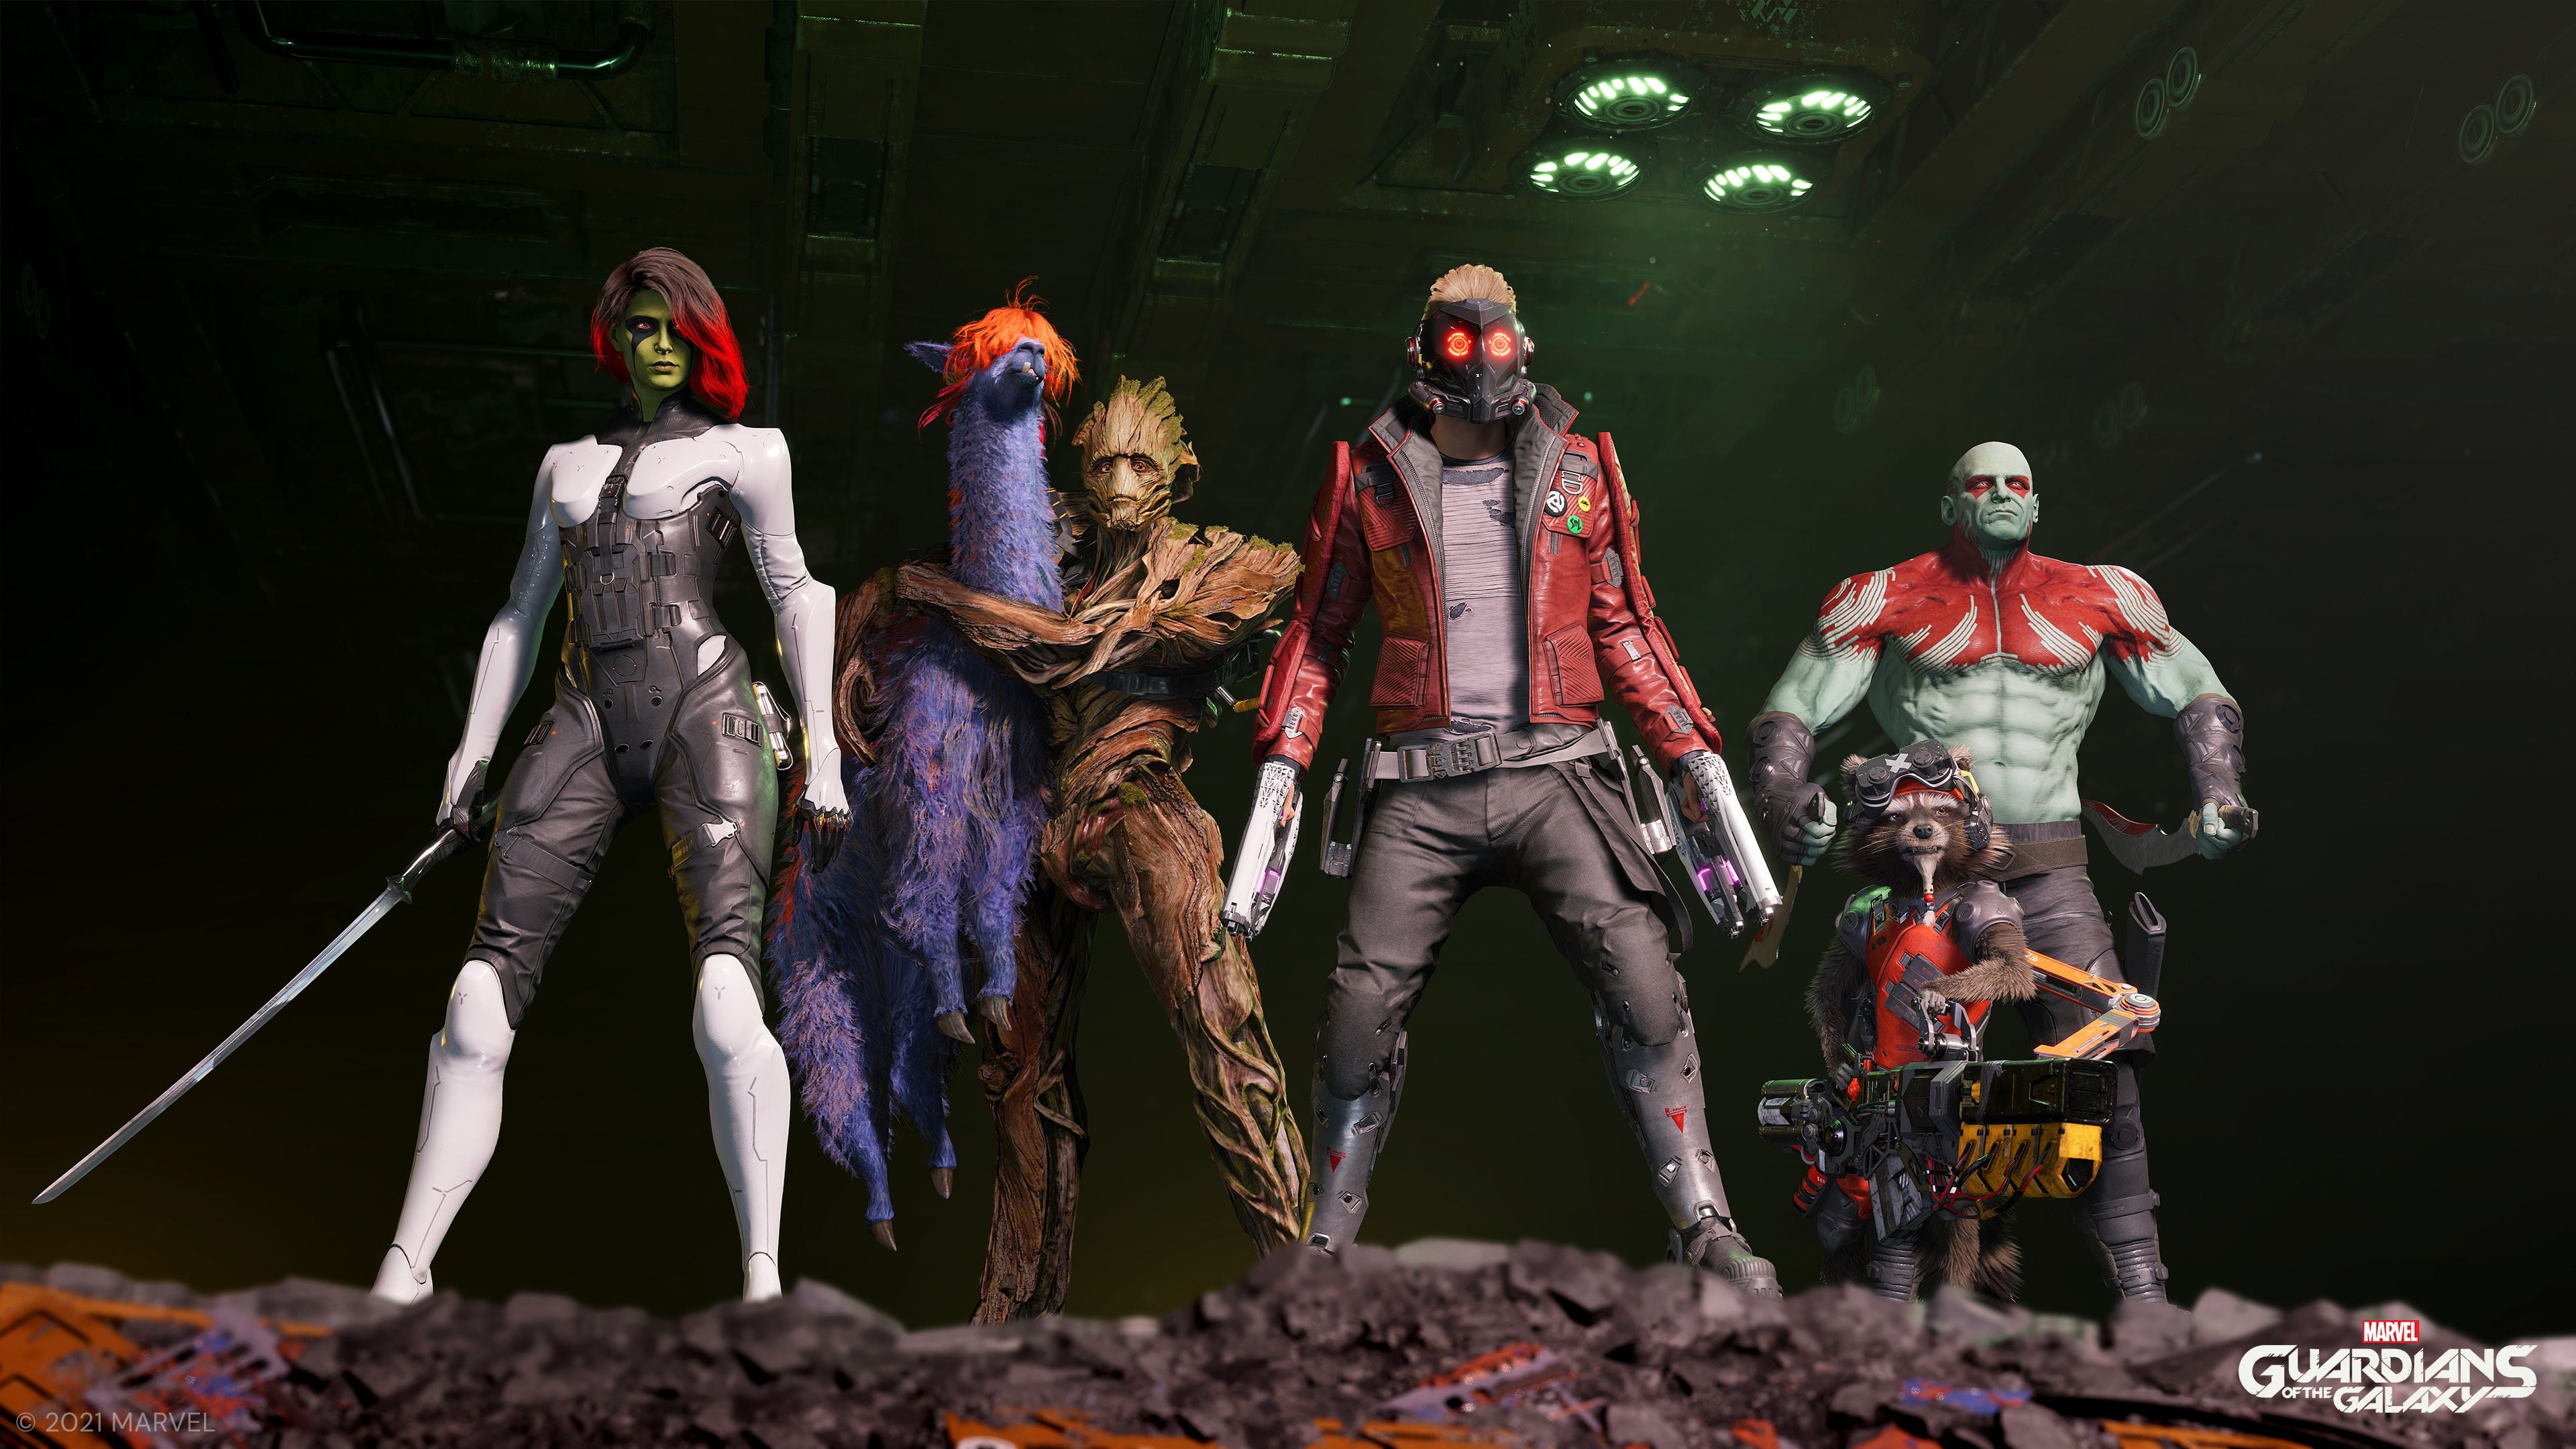 ‘Marvel’s Guardians of the Galaxy’ presenta el video de ‘Zero to Hero’ de la banda Star Lord junto con su banda sonora completa